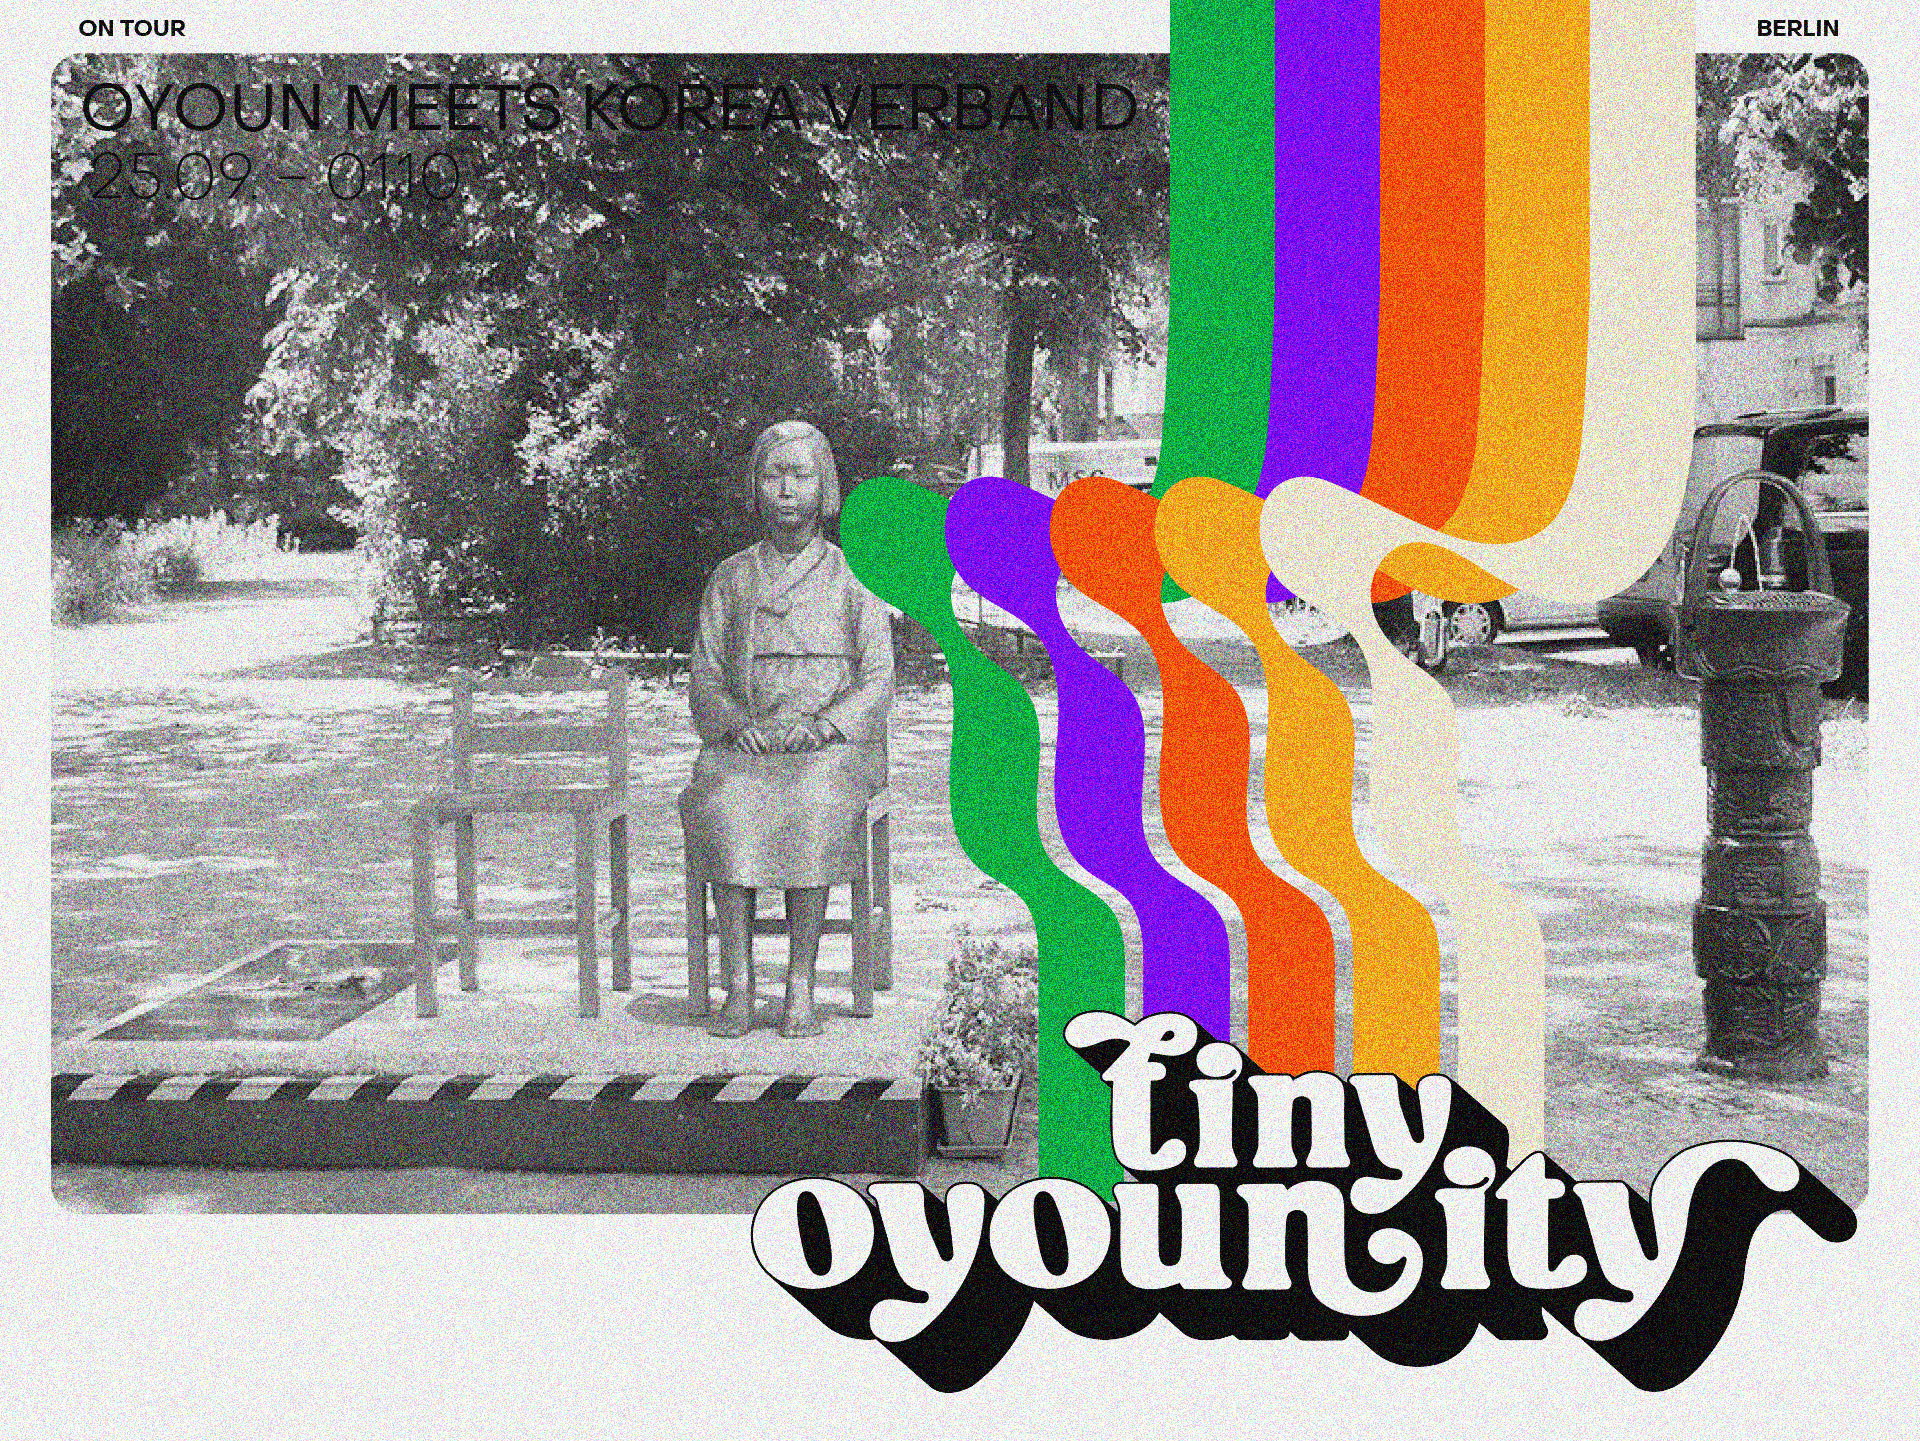 Tiny OyoUnity @ Korea Verband